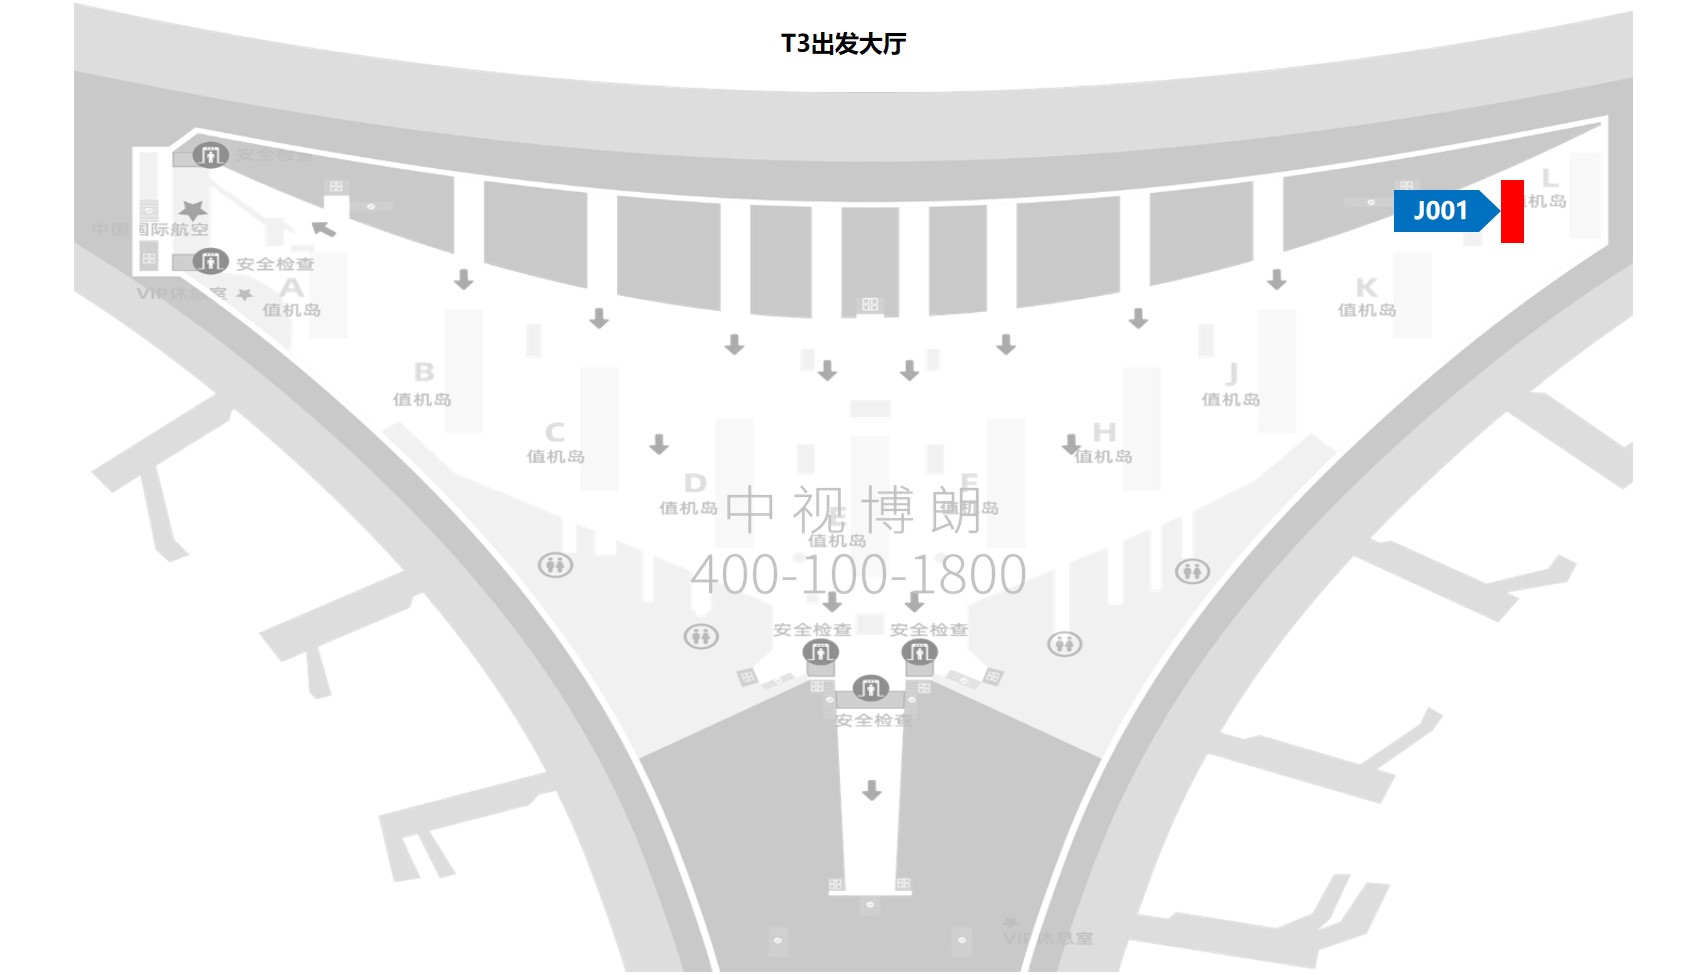 北京首都机场广告-T3出发大厅图腾灯箱J001位置图